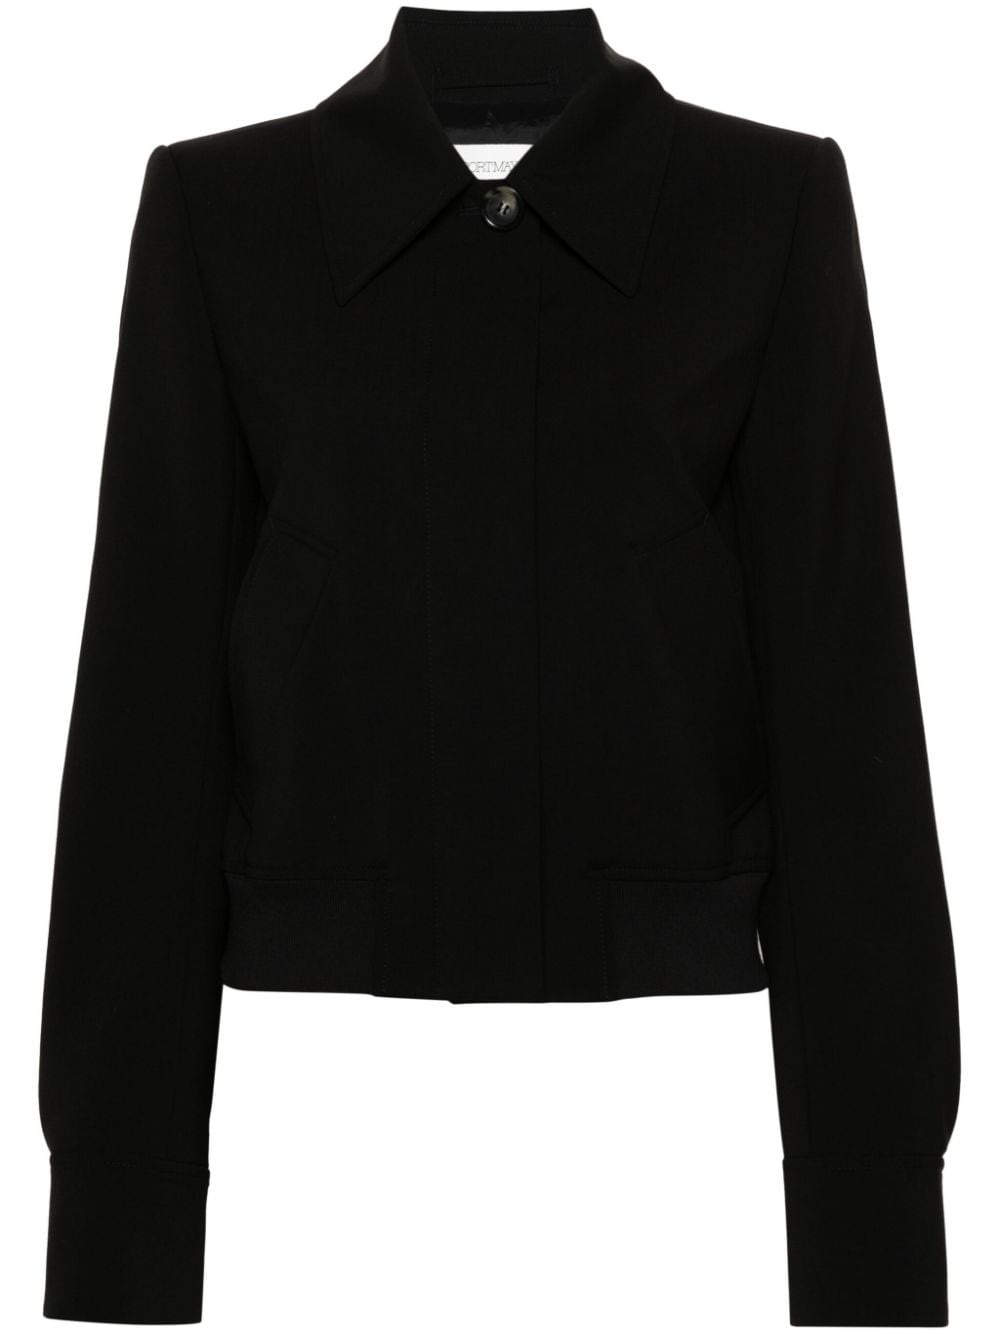 straight-point collar wool jacket - 1